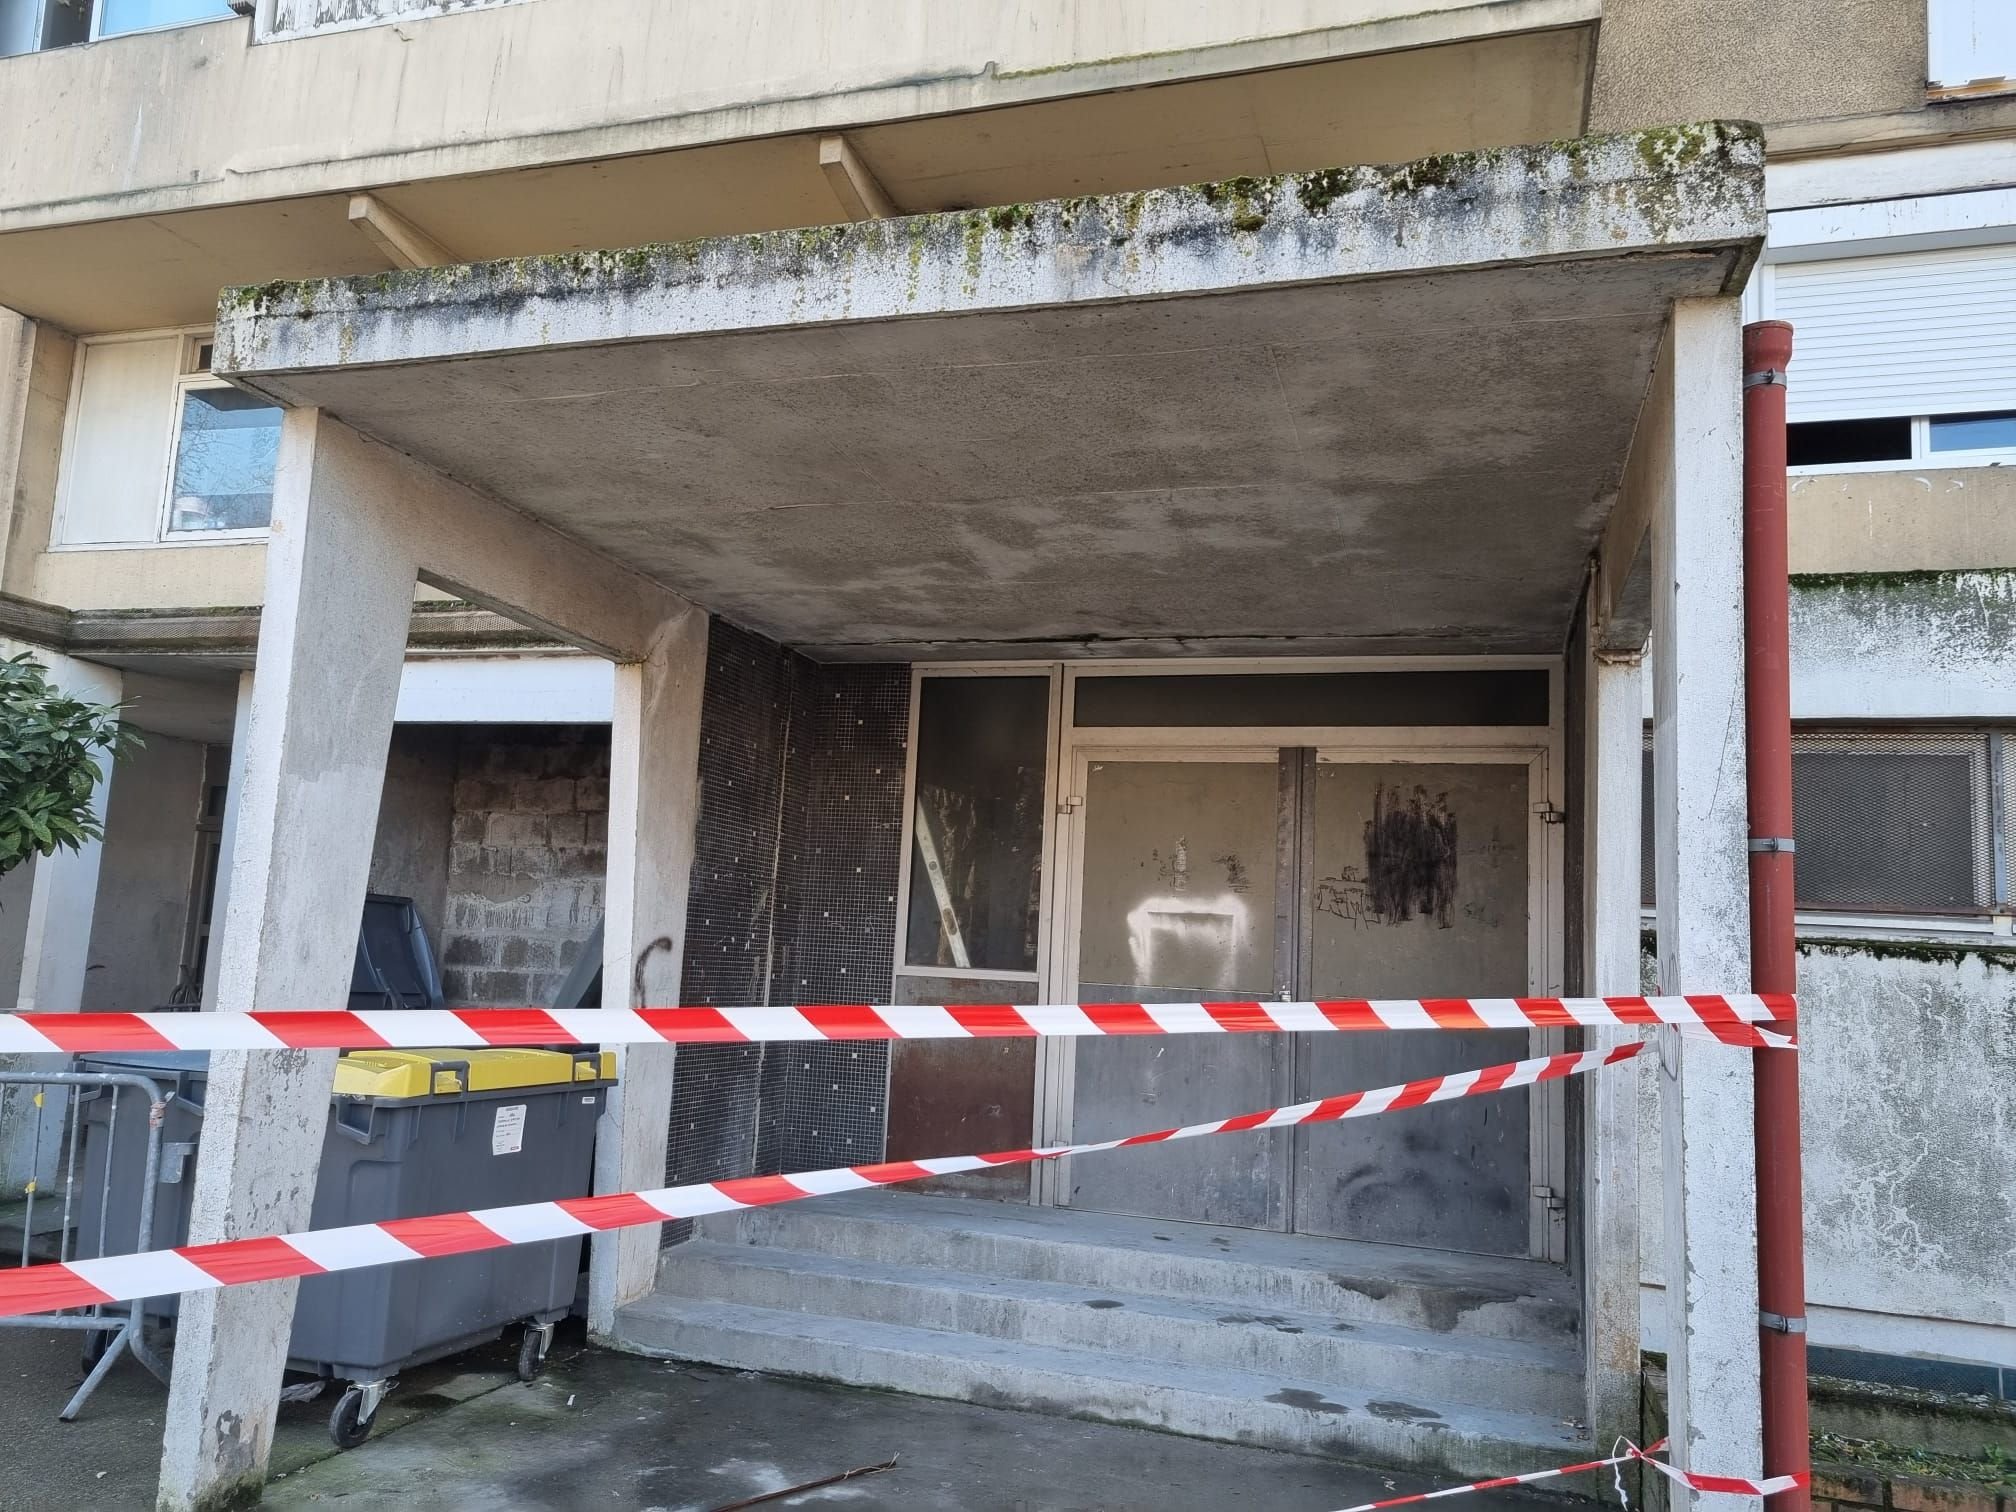 Garges-lès-Gonesse (Val-d'Oise), le 14 février 2022. Une adolescente de 13 ans était décédée lors de l'incendie survenu dans un immeuble dégradé du 1, rue Théophile-Gautier. LP/Marie Briand-Locu